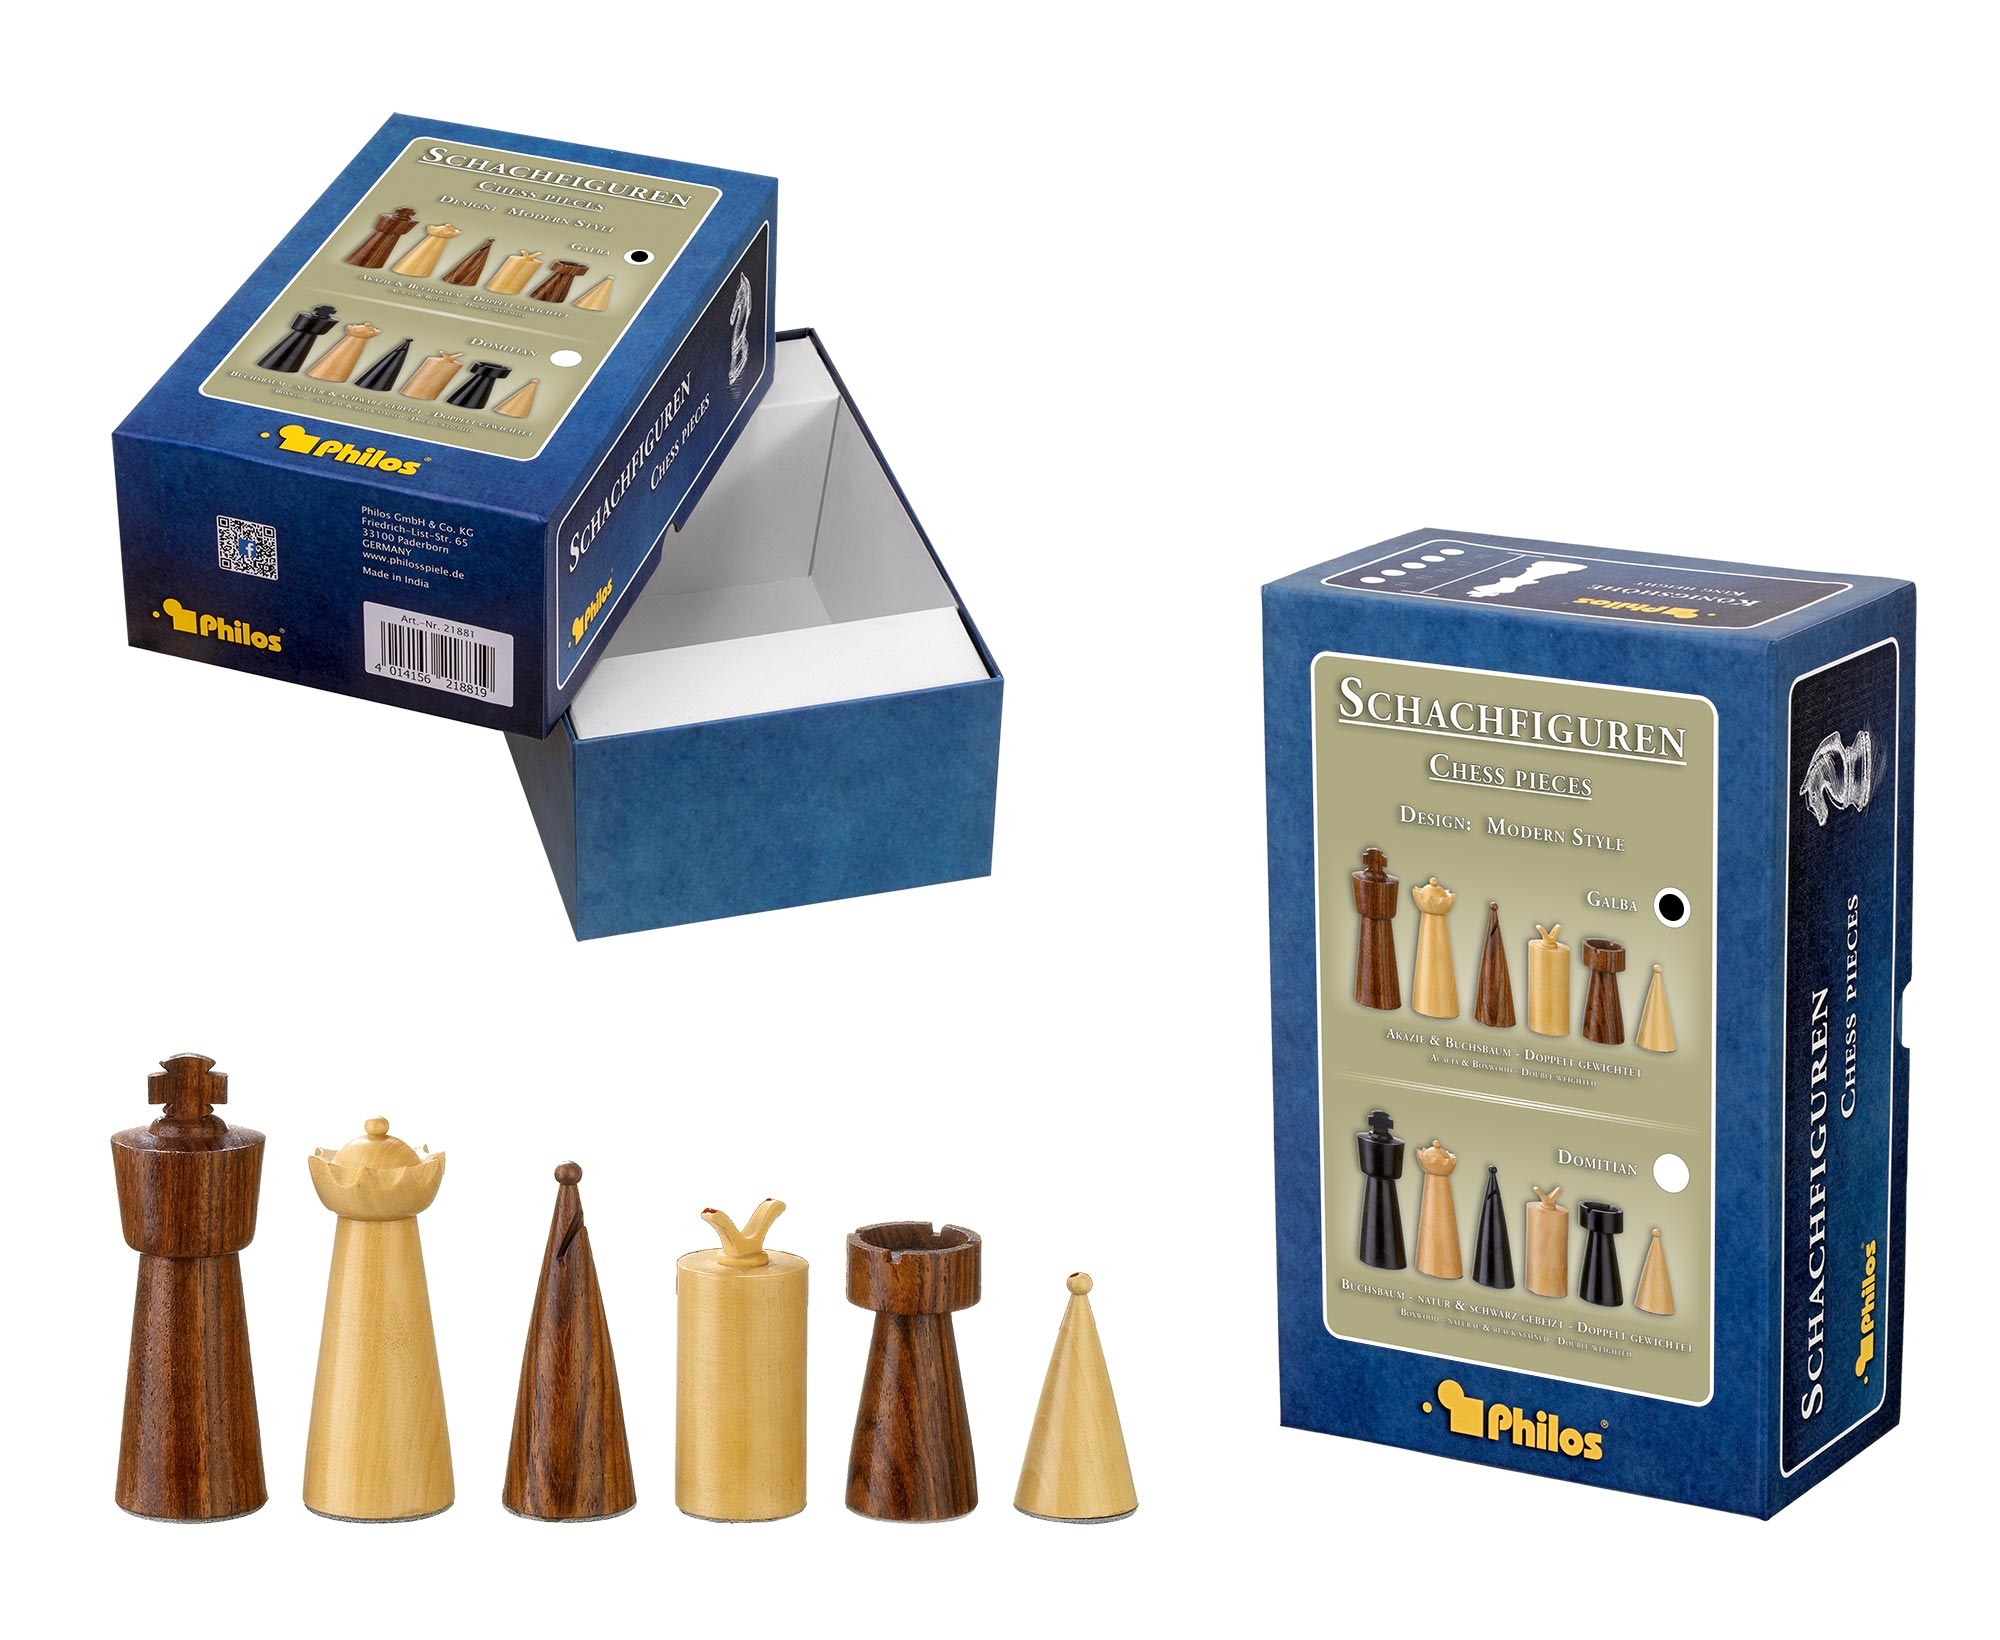 Schachfiguren Galba, Königshöhe 90 mm, in Set-Up Box